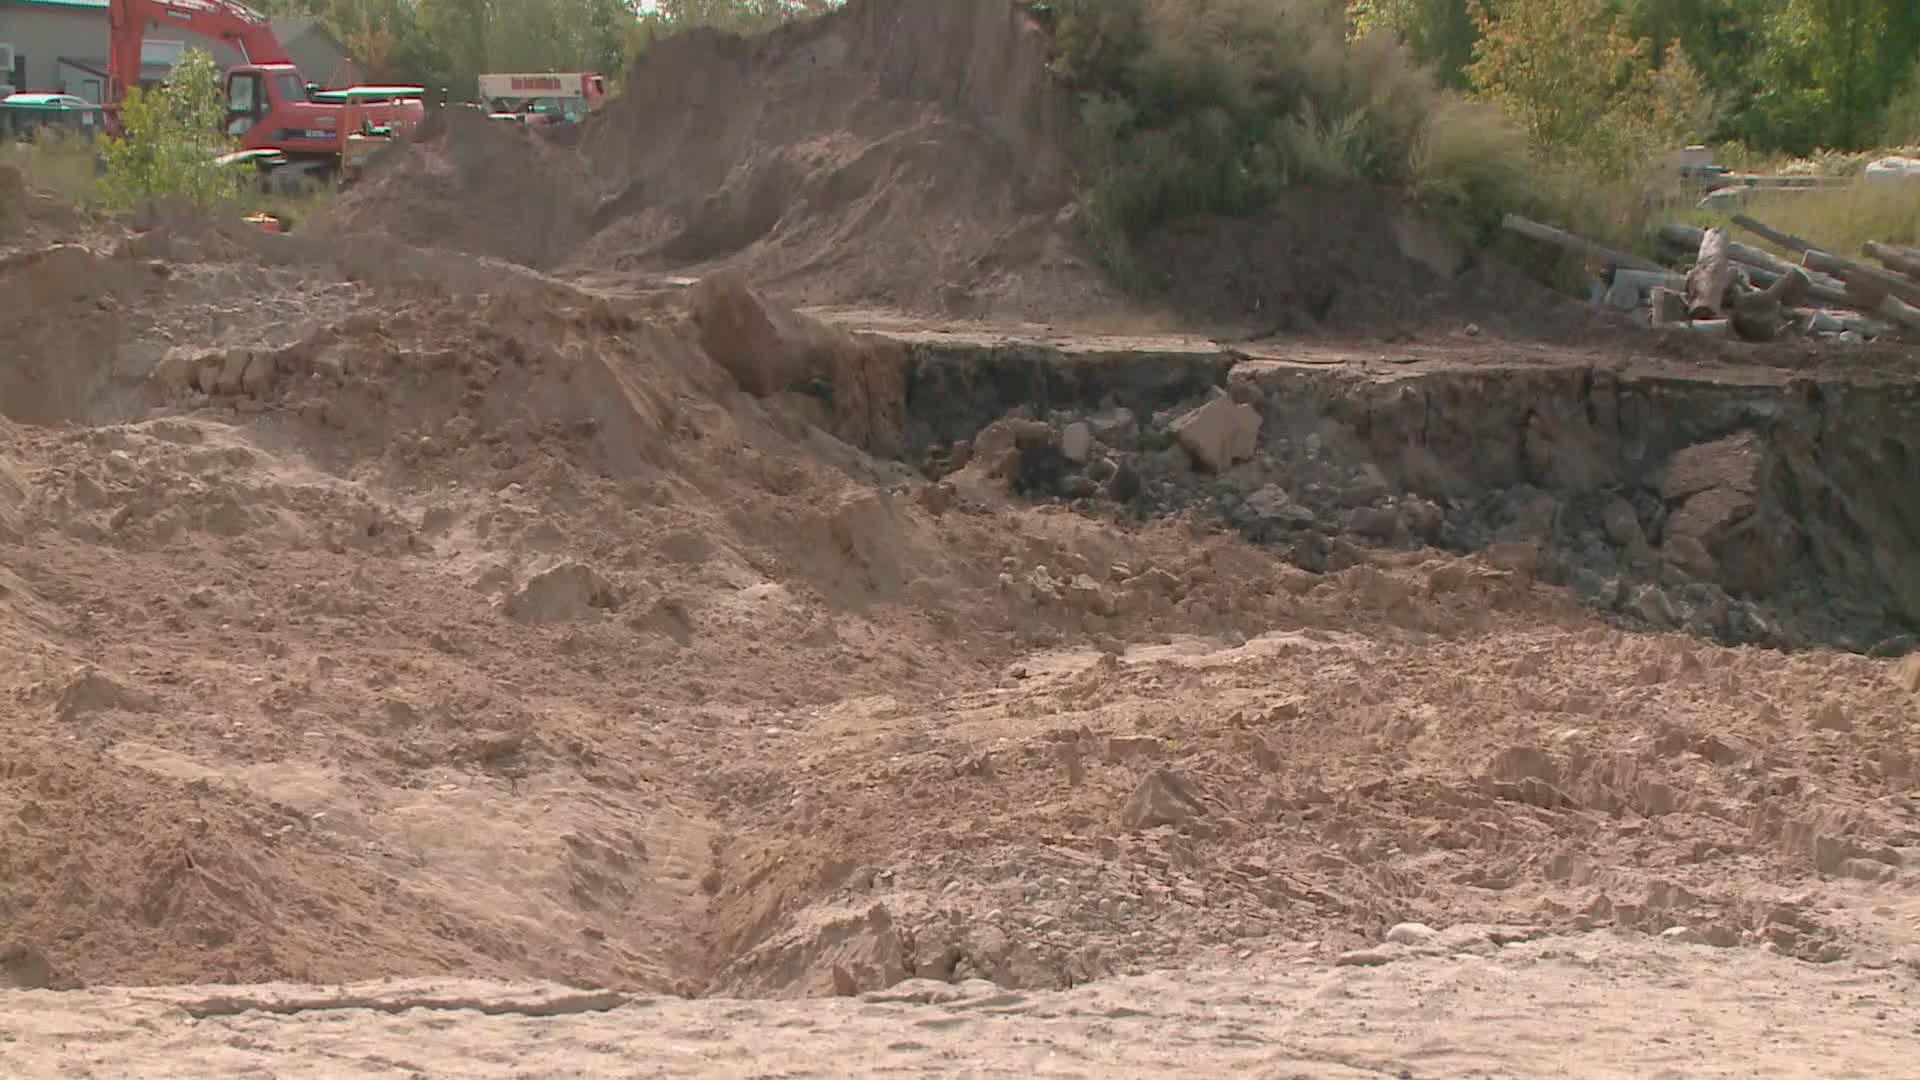 Westbrook Mayor declares state of emergency over landslide blocking Presumpscot River